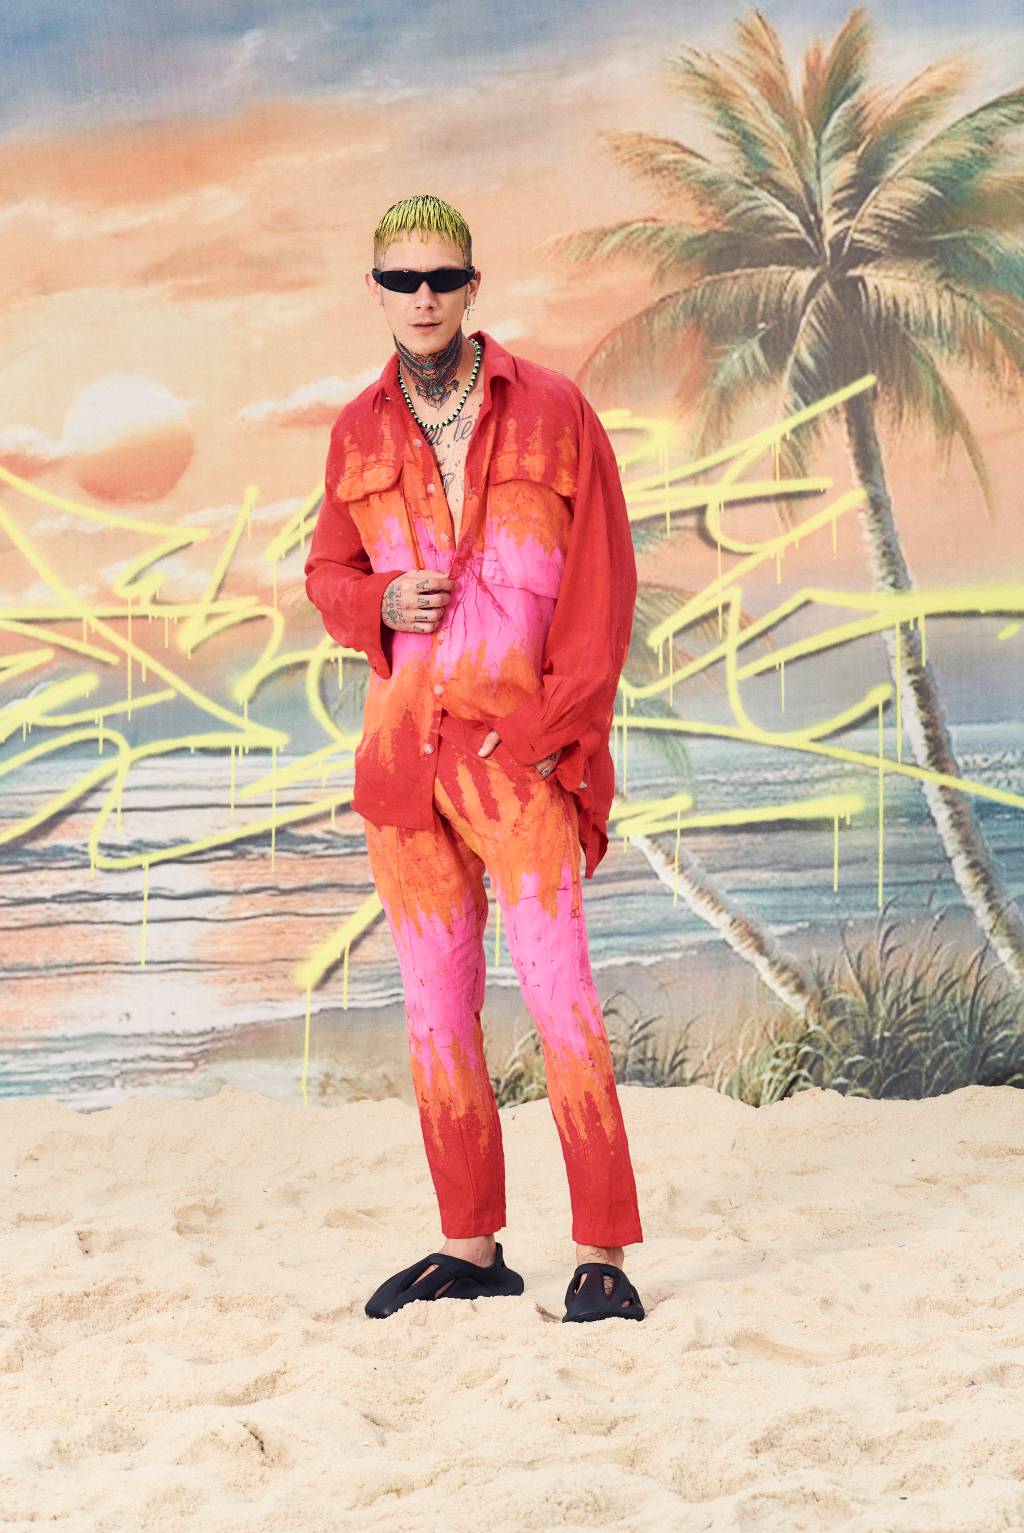 Modelo masculino posa de pé com jaqueta e calça alaranjadas, com tons de rosa. Usa óculos escuros, tem cabelos loiros e ao fundo aparece um papel de parede com palmeiras.